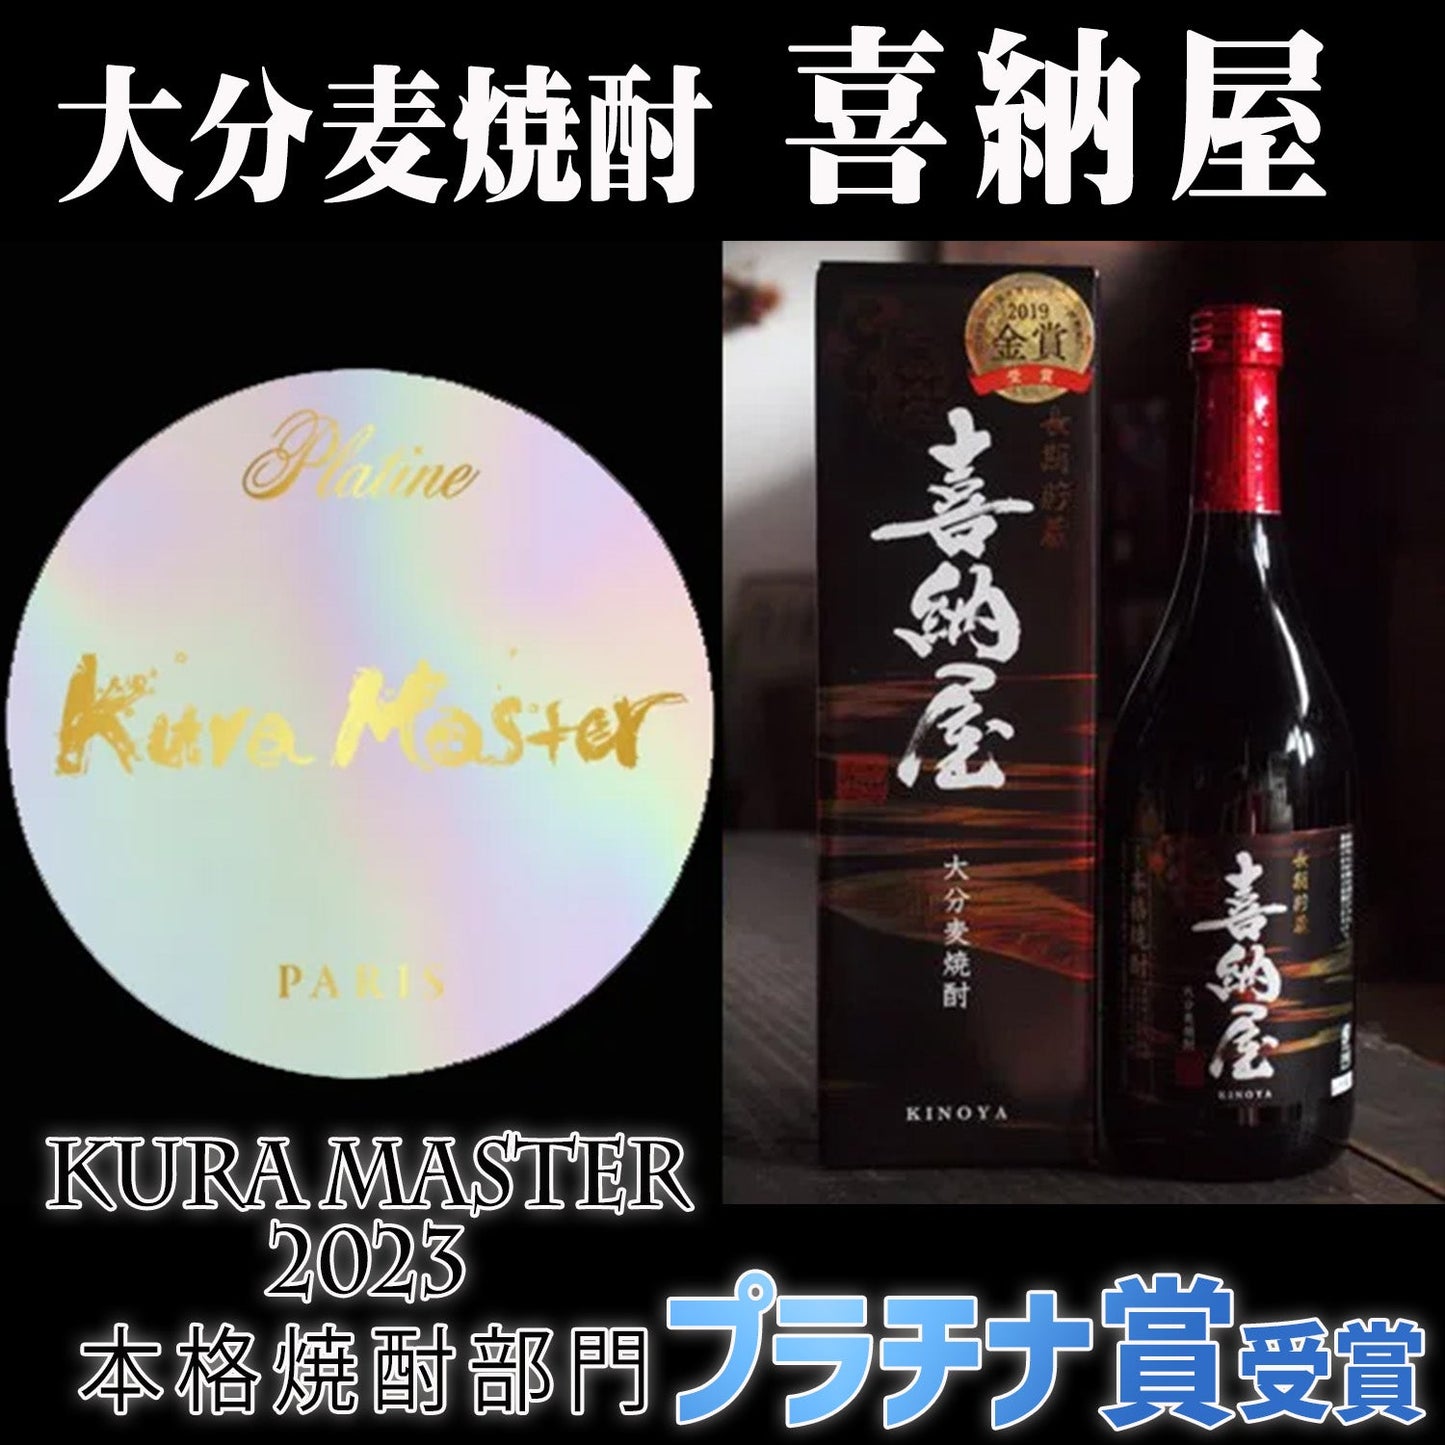 「純米酒ちえびじん」と「麦焼酎喜納屋(きのや)」Kura Master受賞セット